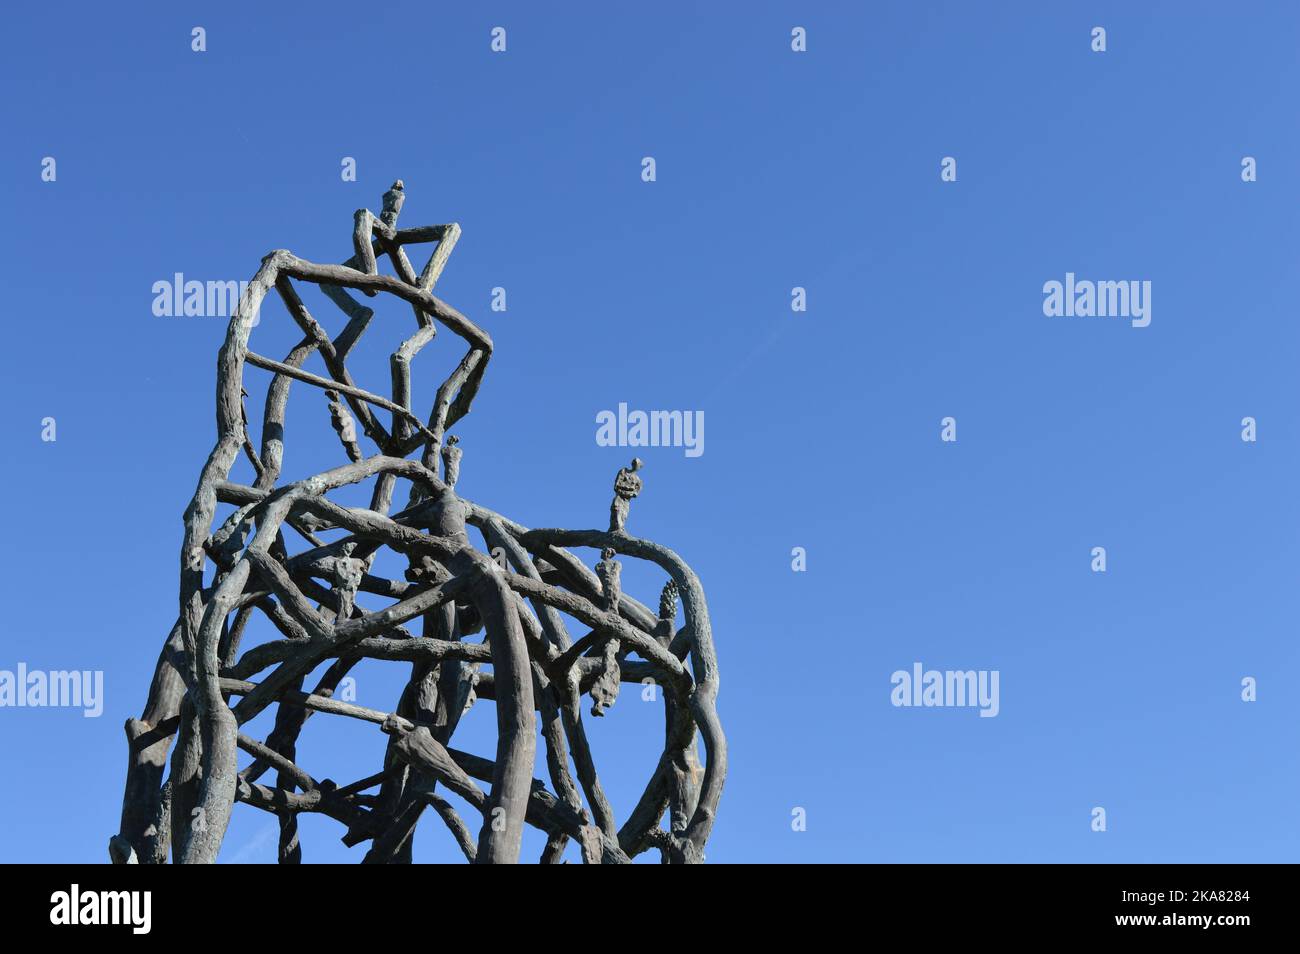 Sculpture Weltwegbetrachter from Gunter Damisch on sunny day with perfect blue sky, Hochkogel, Mostviertel, lower Austria Stock Photo